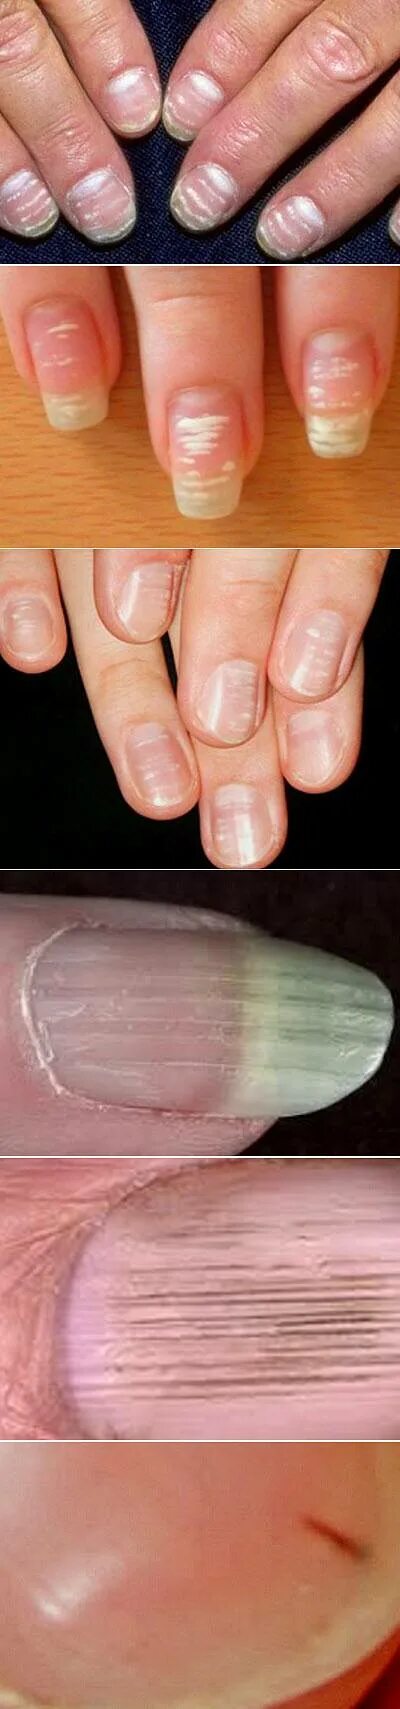 Лечение продольных полос на ногтях. Ониходистрофия, лейконихия. Вертикальные полосы на ногтях. Поперечные полосы на ногтях. Поперечные белые полоски на ногтях.